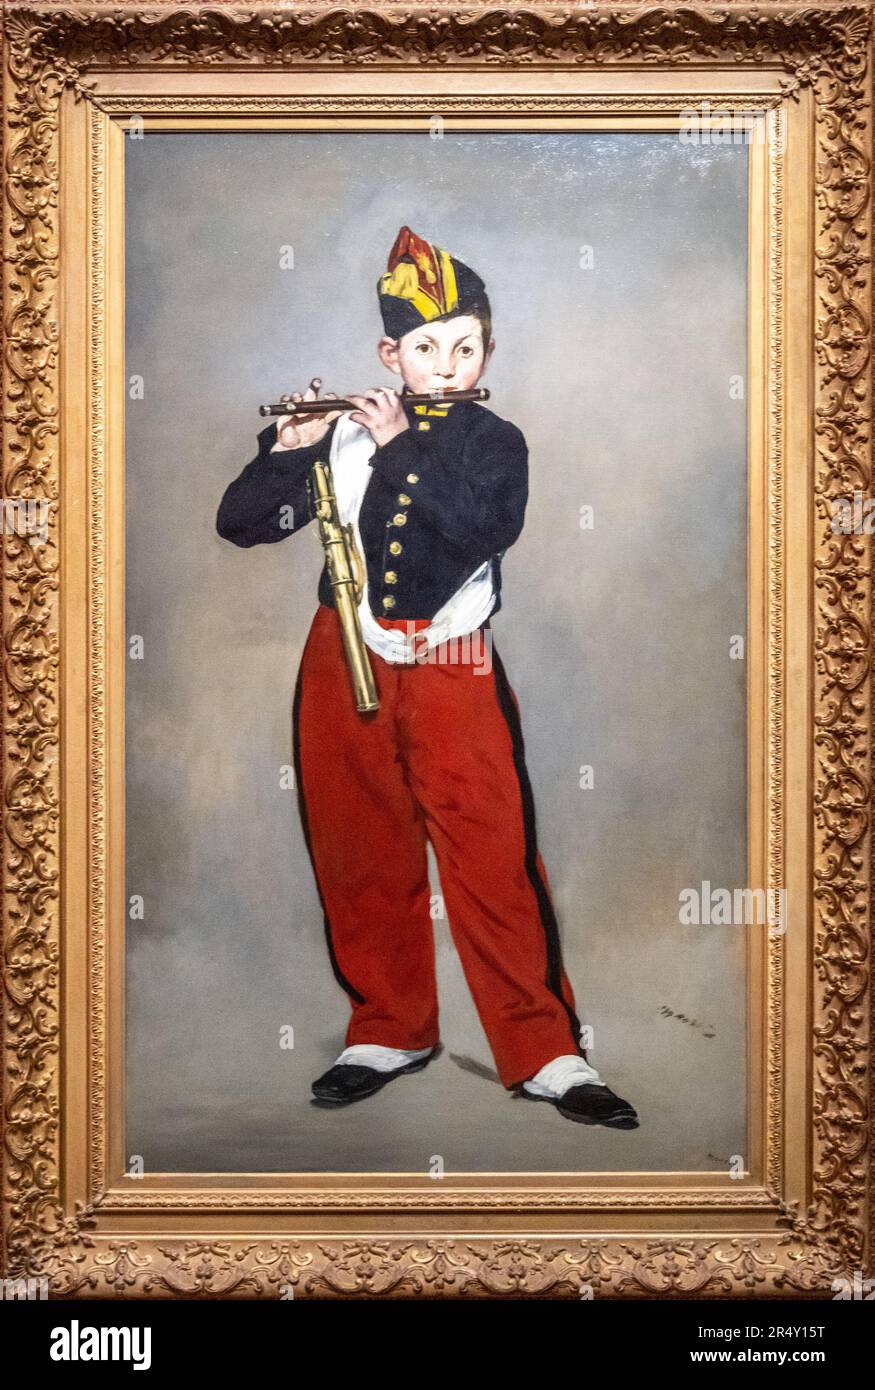 Le Fifer ou le Jeune flûtiste, peinture du peintre français Edouard Manet à partir de 1866. Musée d'Orsay, Paris, France Banque D'Images